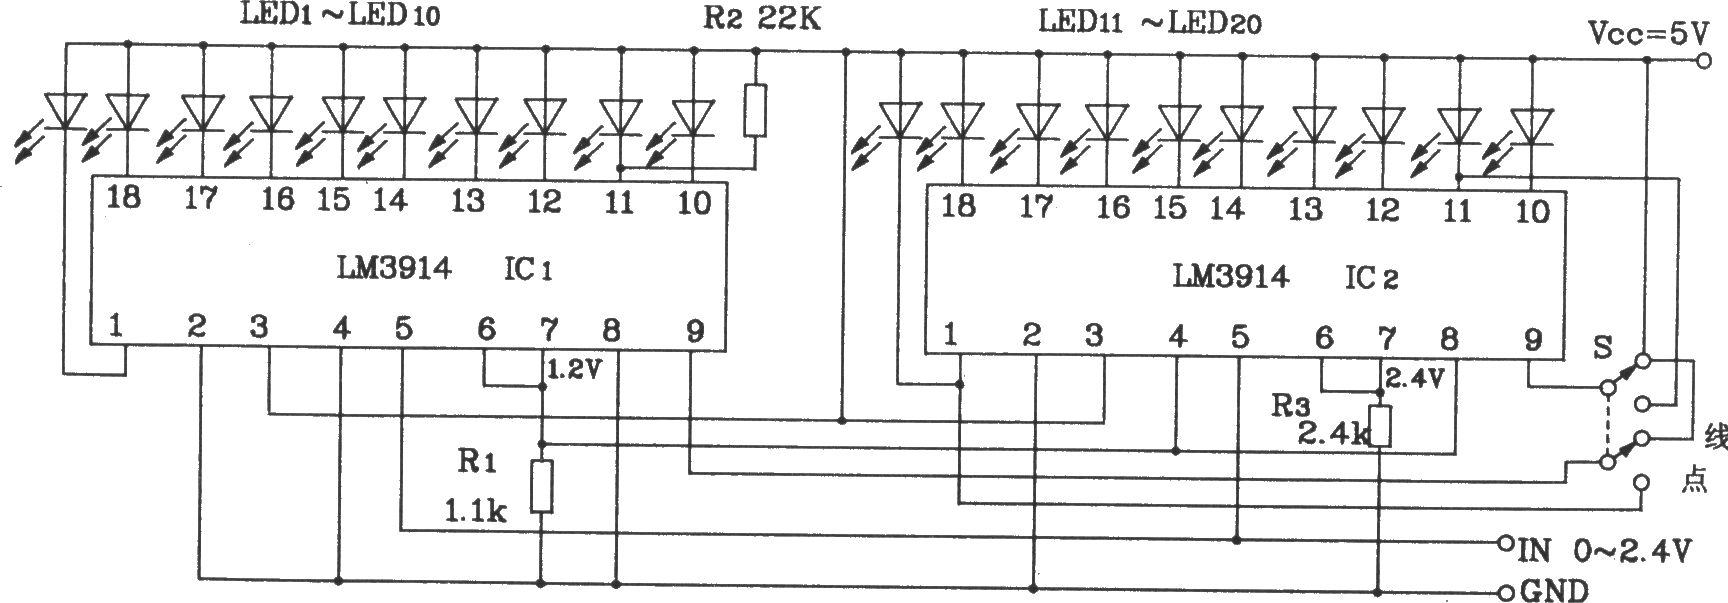 两块LM3914构成的20位LED点/线转换显示电路